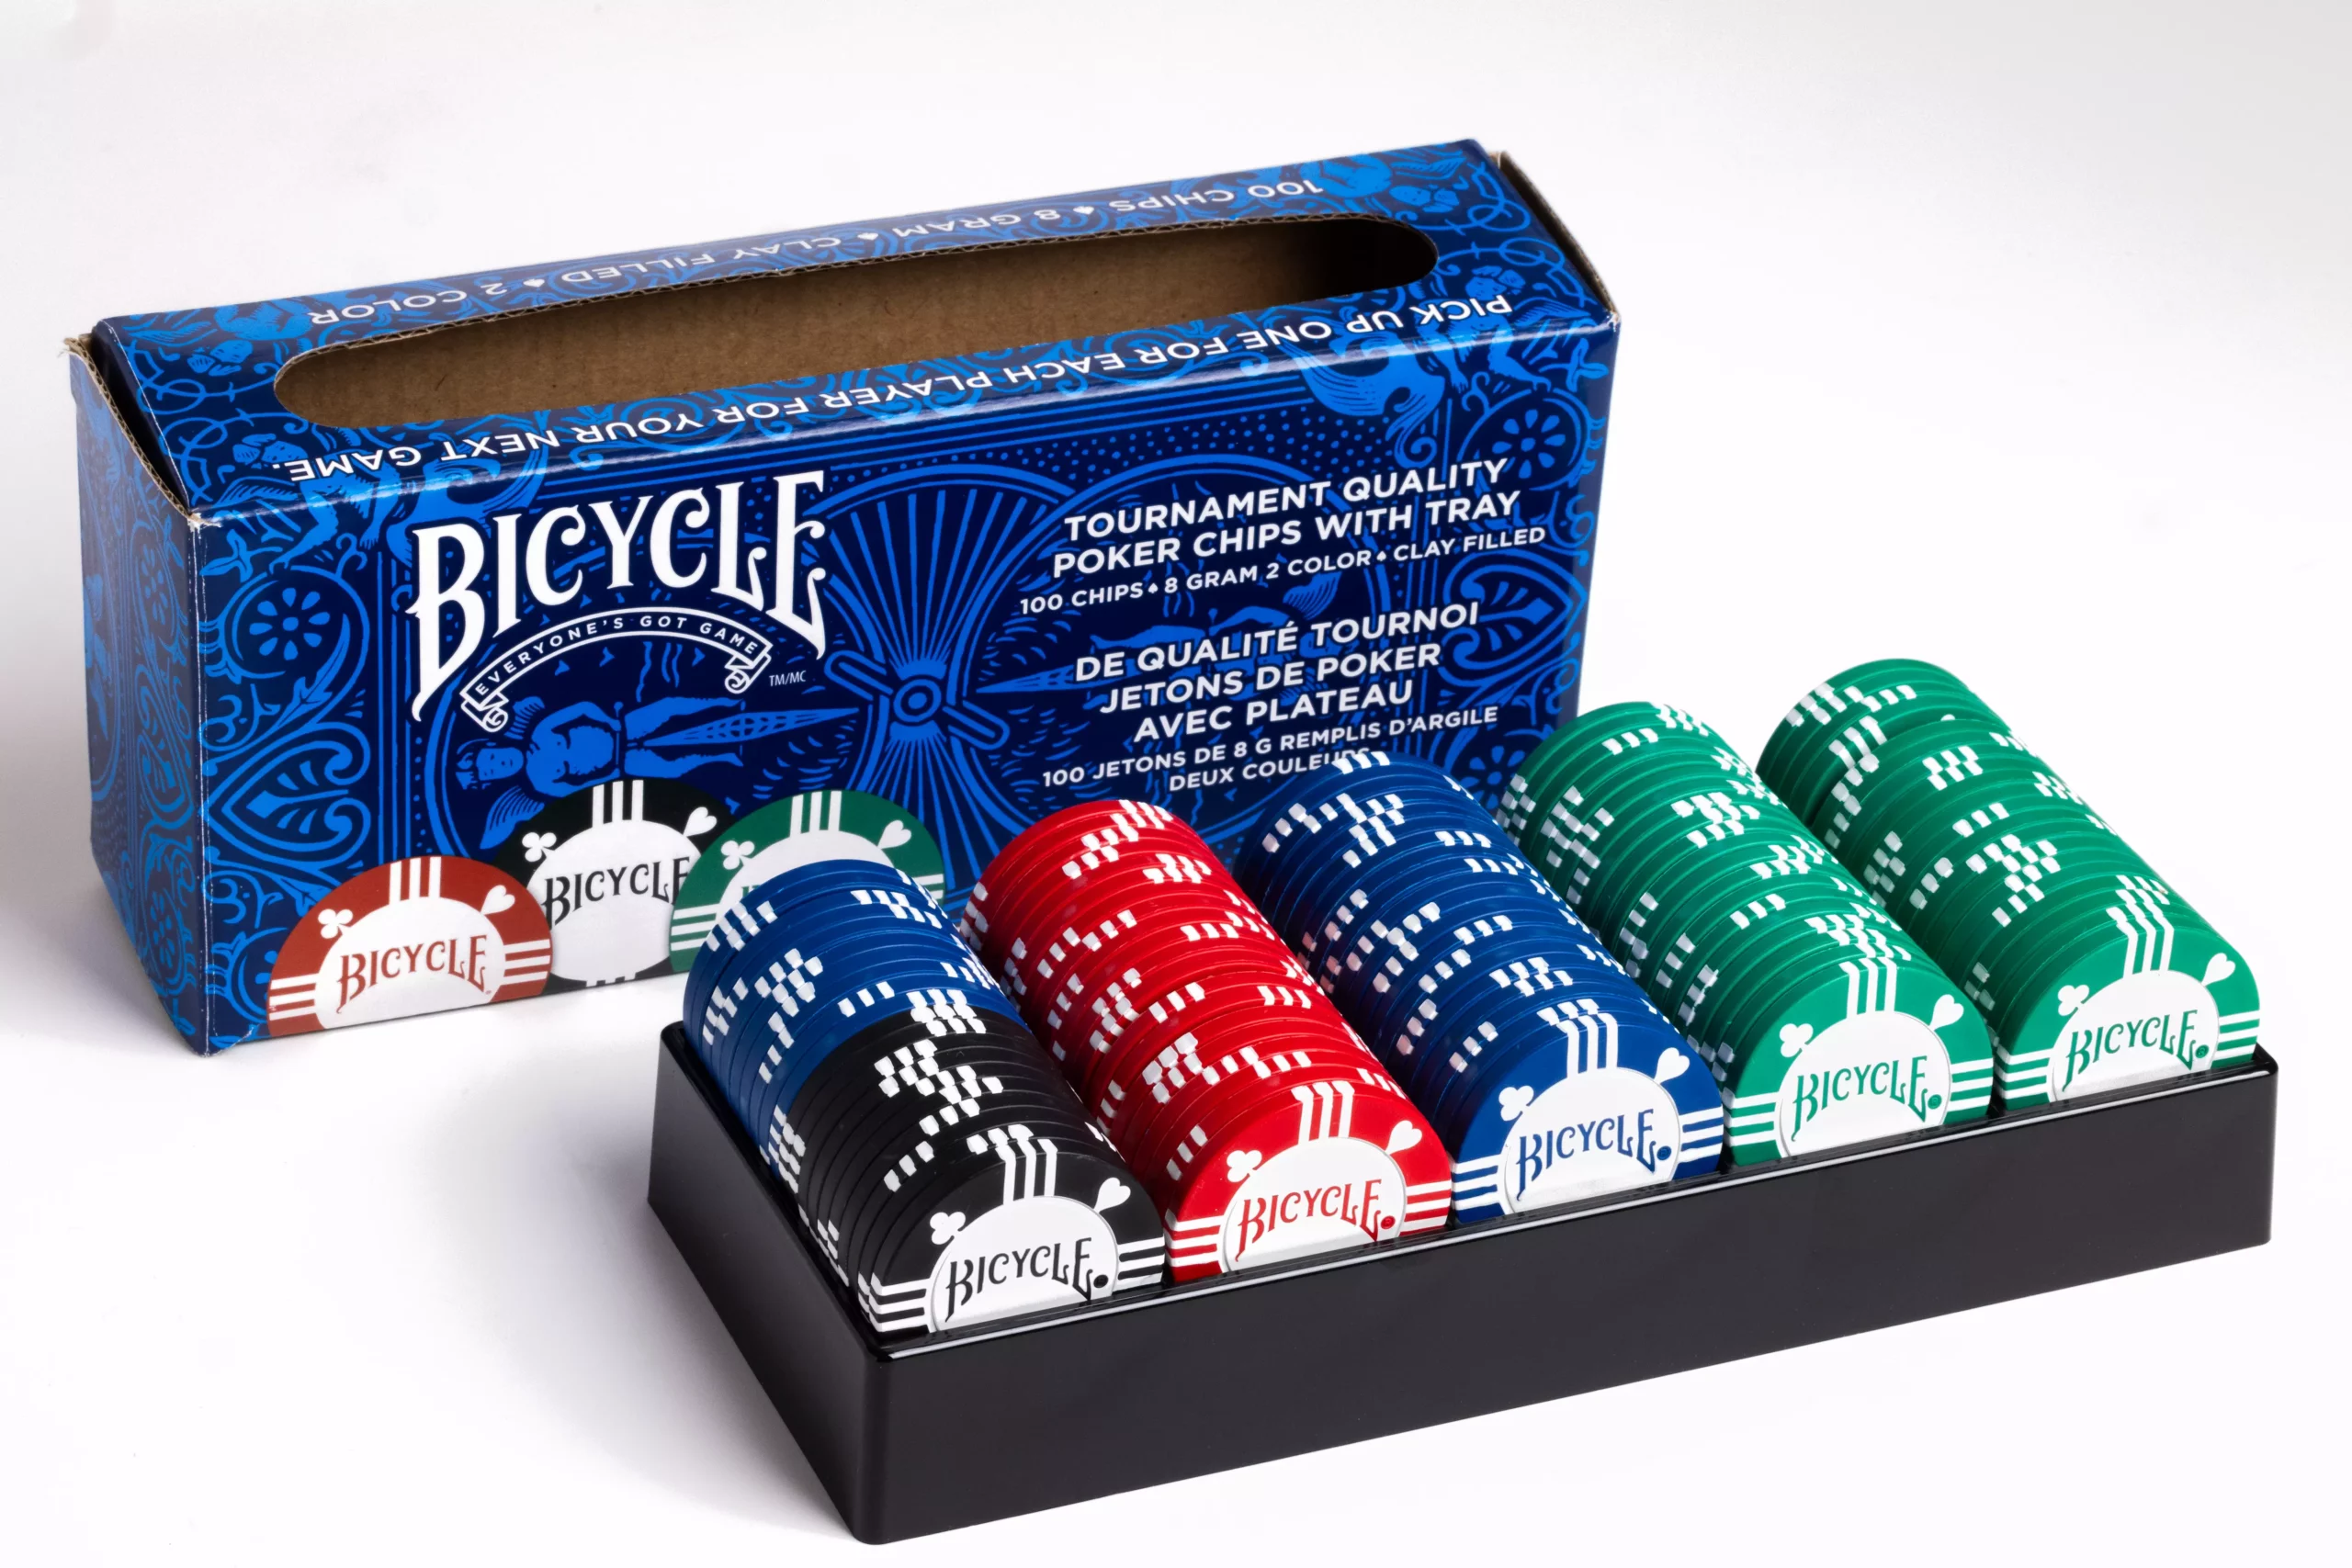 Eine Bicycle originals Poker Chips Schachtel steht mit sichtbarer Forderseite und ausgepackten Poker Chips vor einem weißem Hintergrund.